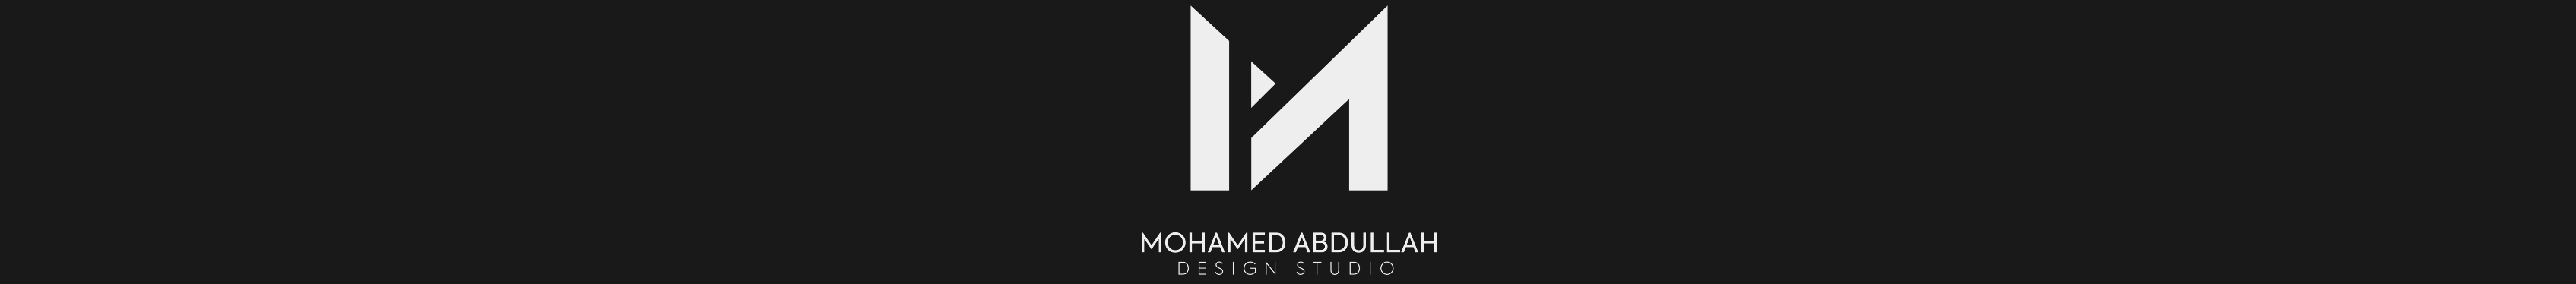 Bannière de profil de Muhammed Abdallah